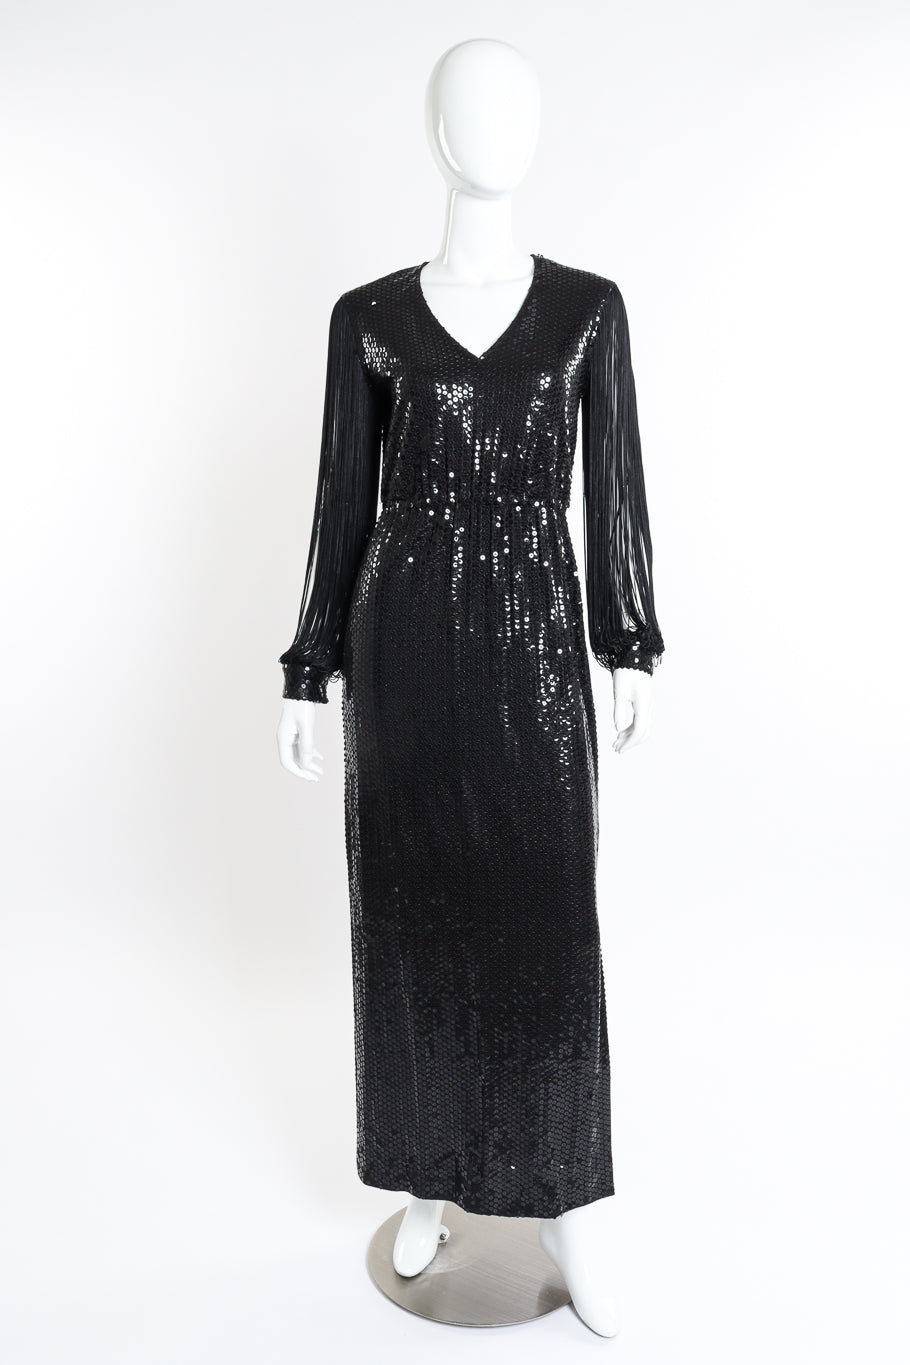 Vintage Fringe Sleeve Sequin Dress front on mannequin @recessla